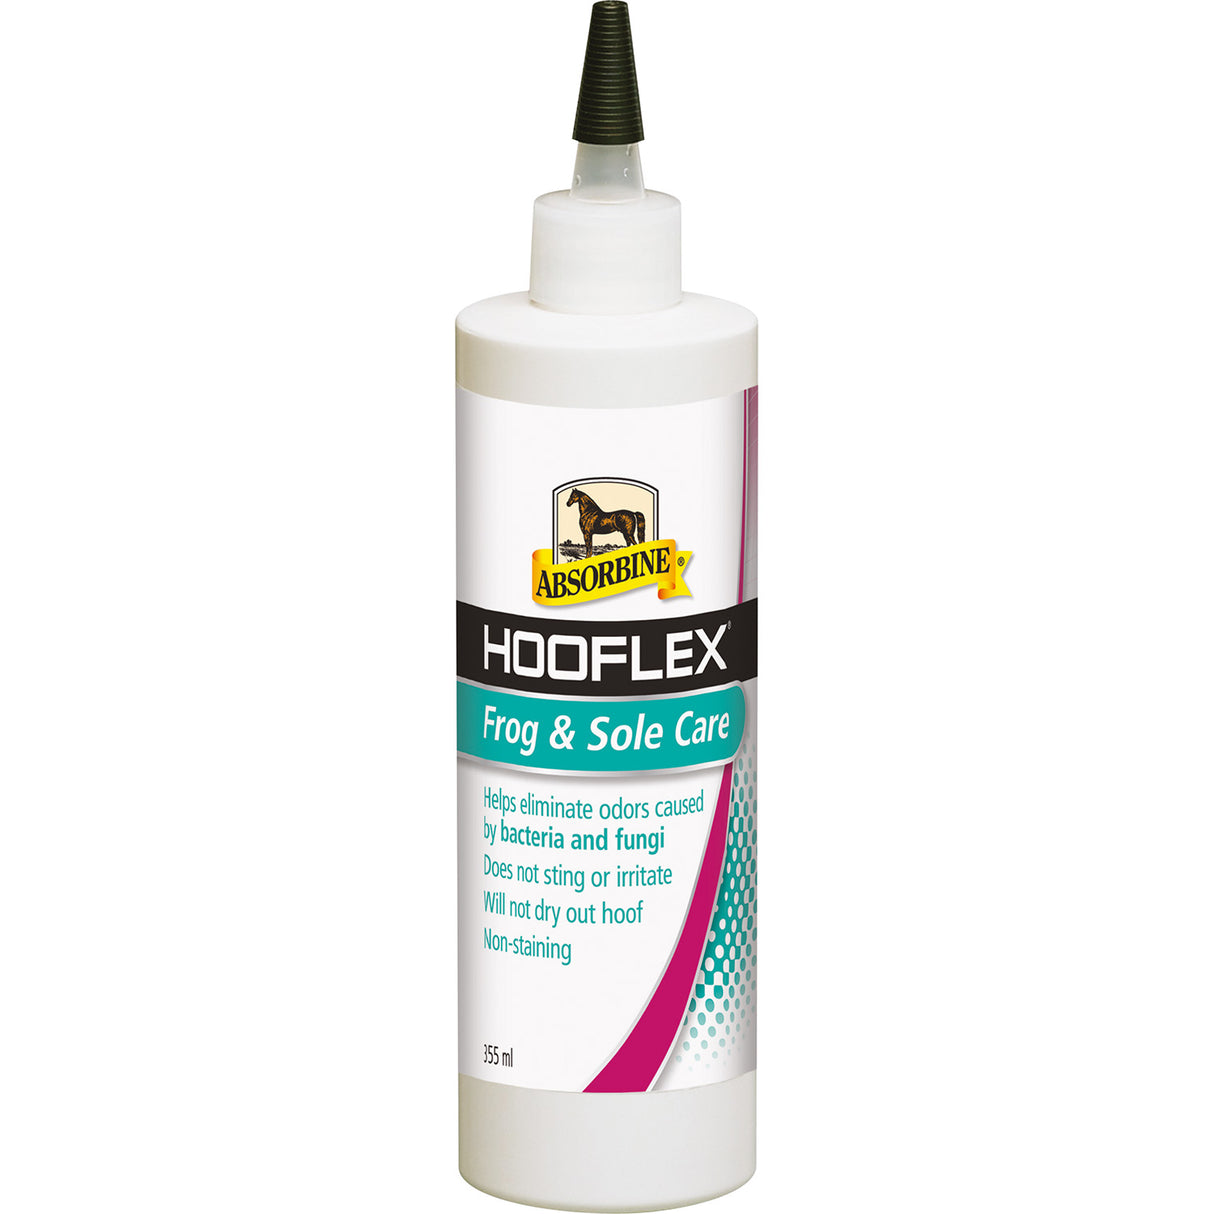 Absorbine Hooflex Frog & Sole Care #size_355ml